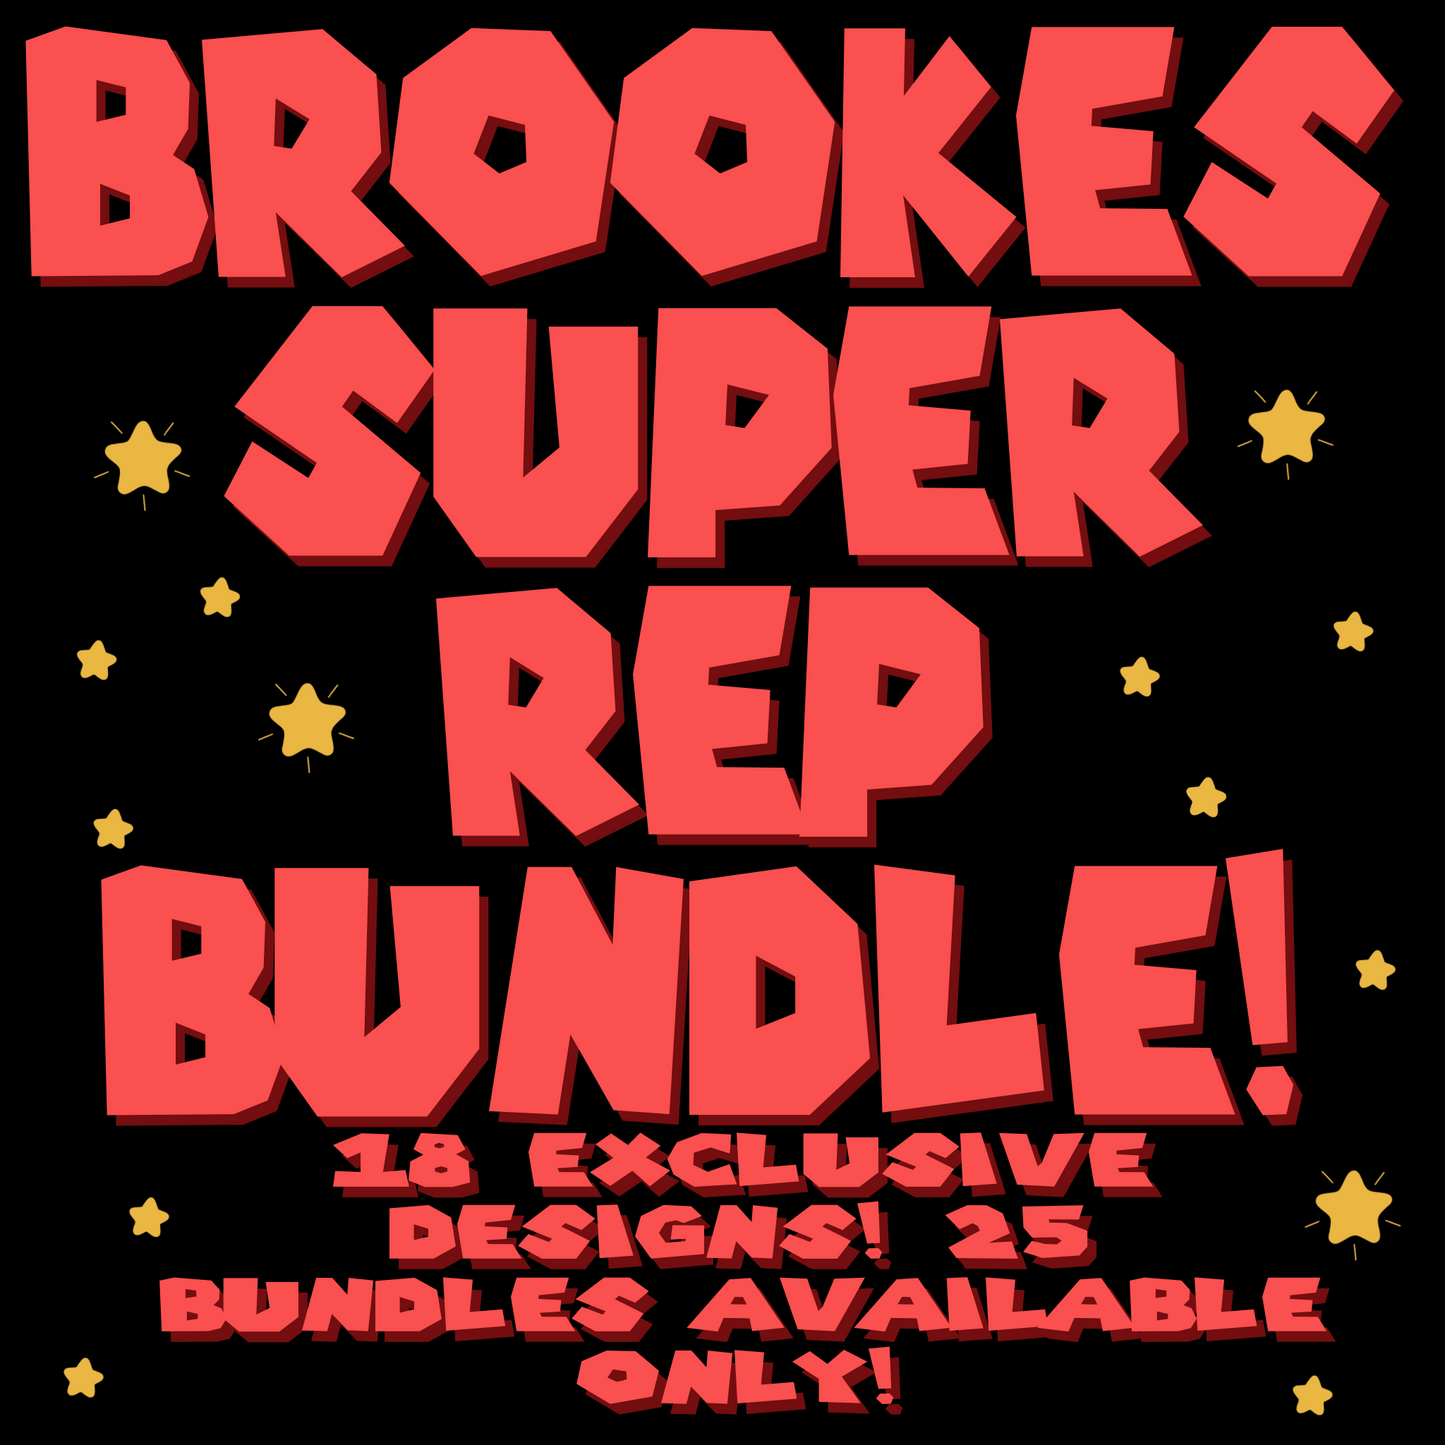 Brooke’s super rep bundle!